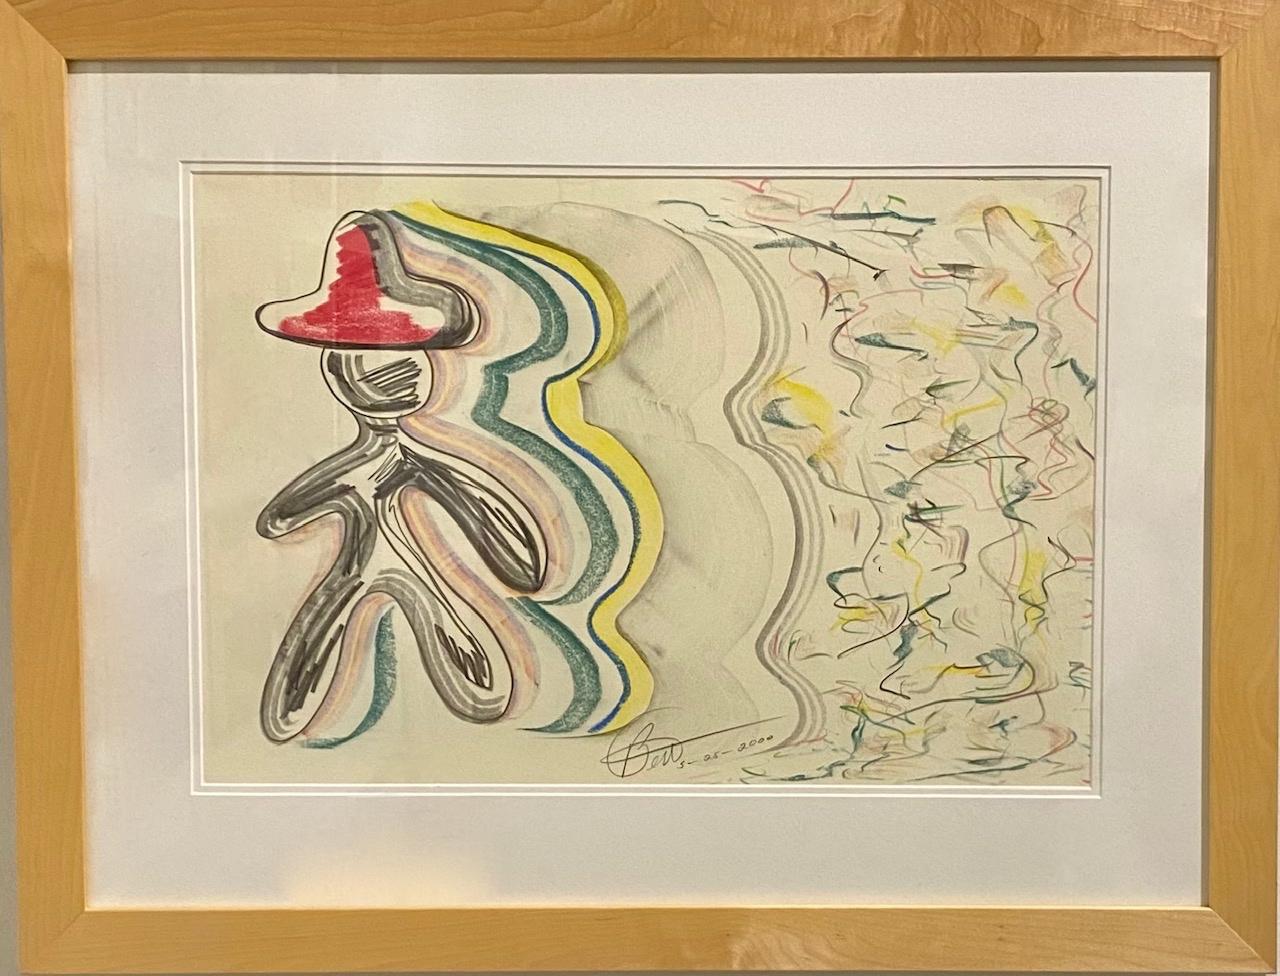 Composé de fusain et de pastel, ce dessin est une expression simple mais vivante de la sensibilité ludique de Long. 

Bert L. Long Jr, artiste autodidacte, est né en 1940 au Texas, a grandi dans le quartier historique de Houston, le Fifth Ward, et a